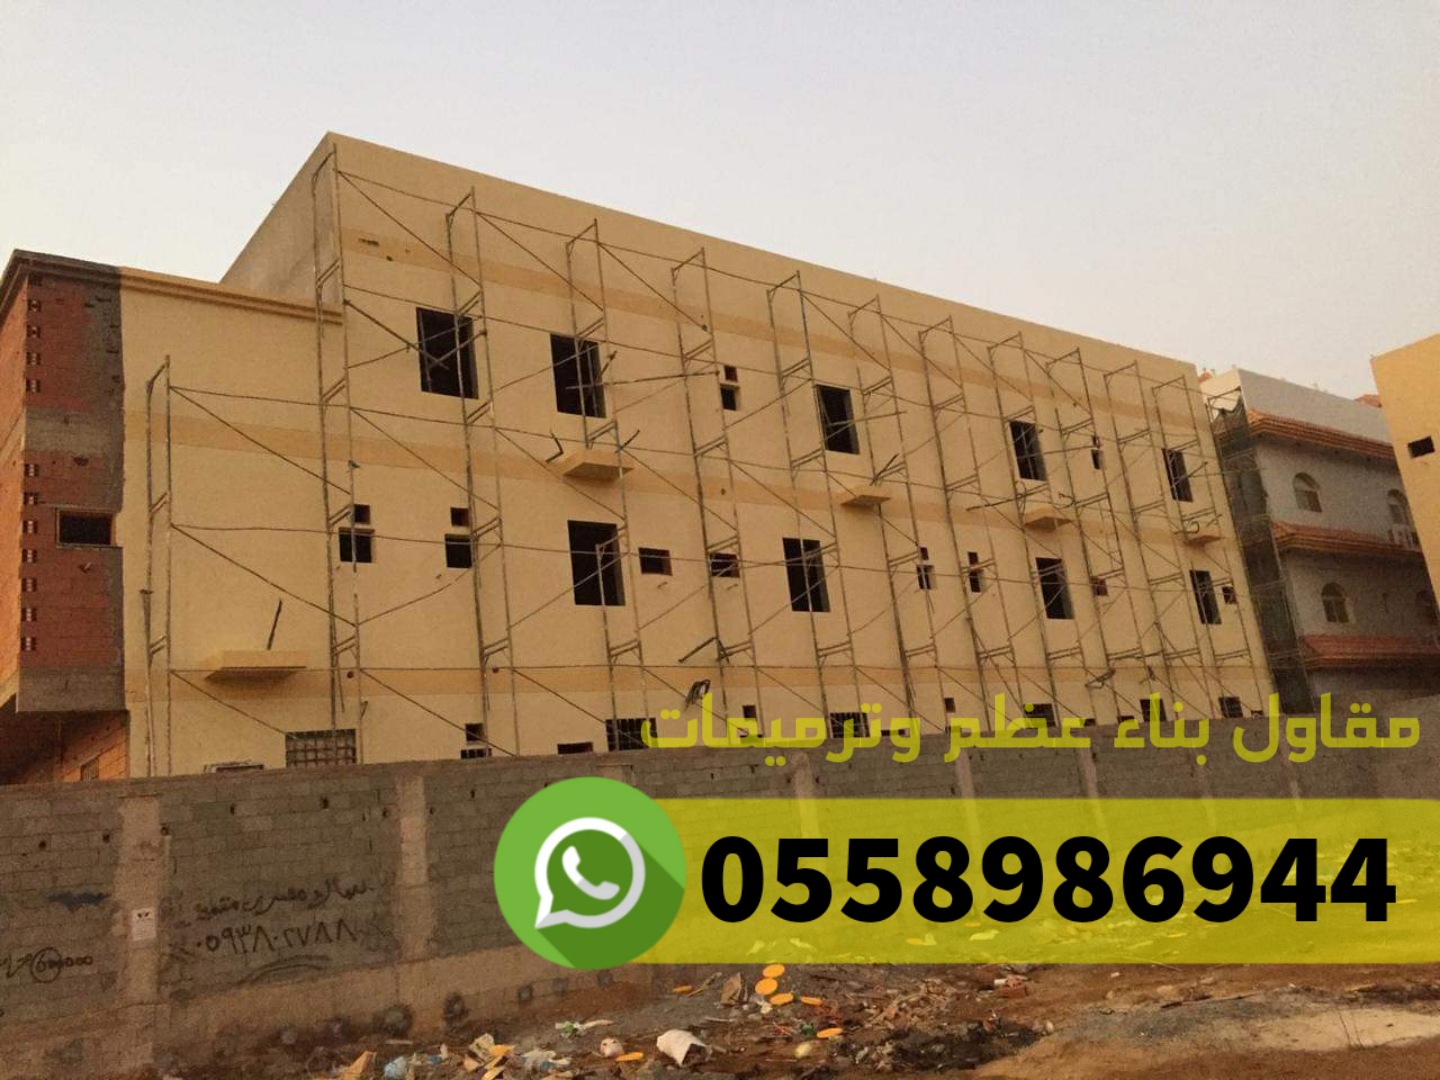 مقاول معماري في جدة مكة الطائف,0558986944